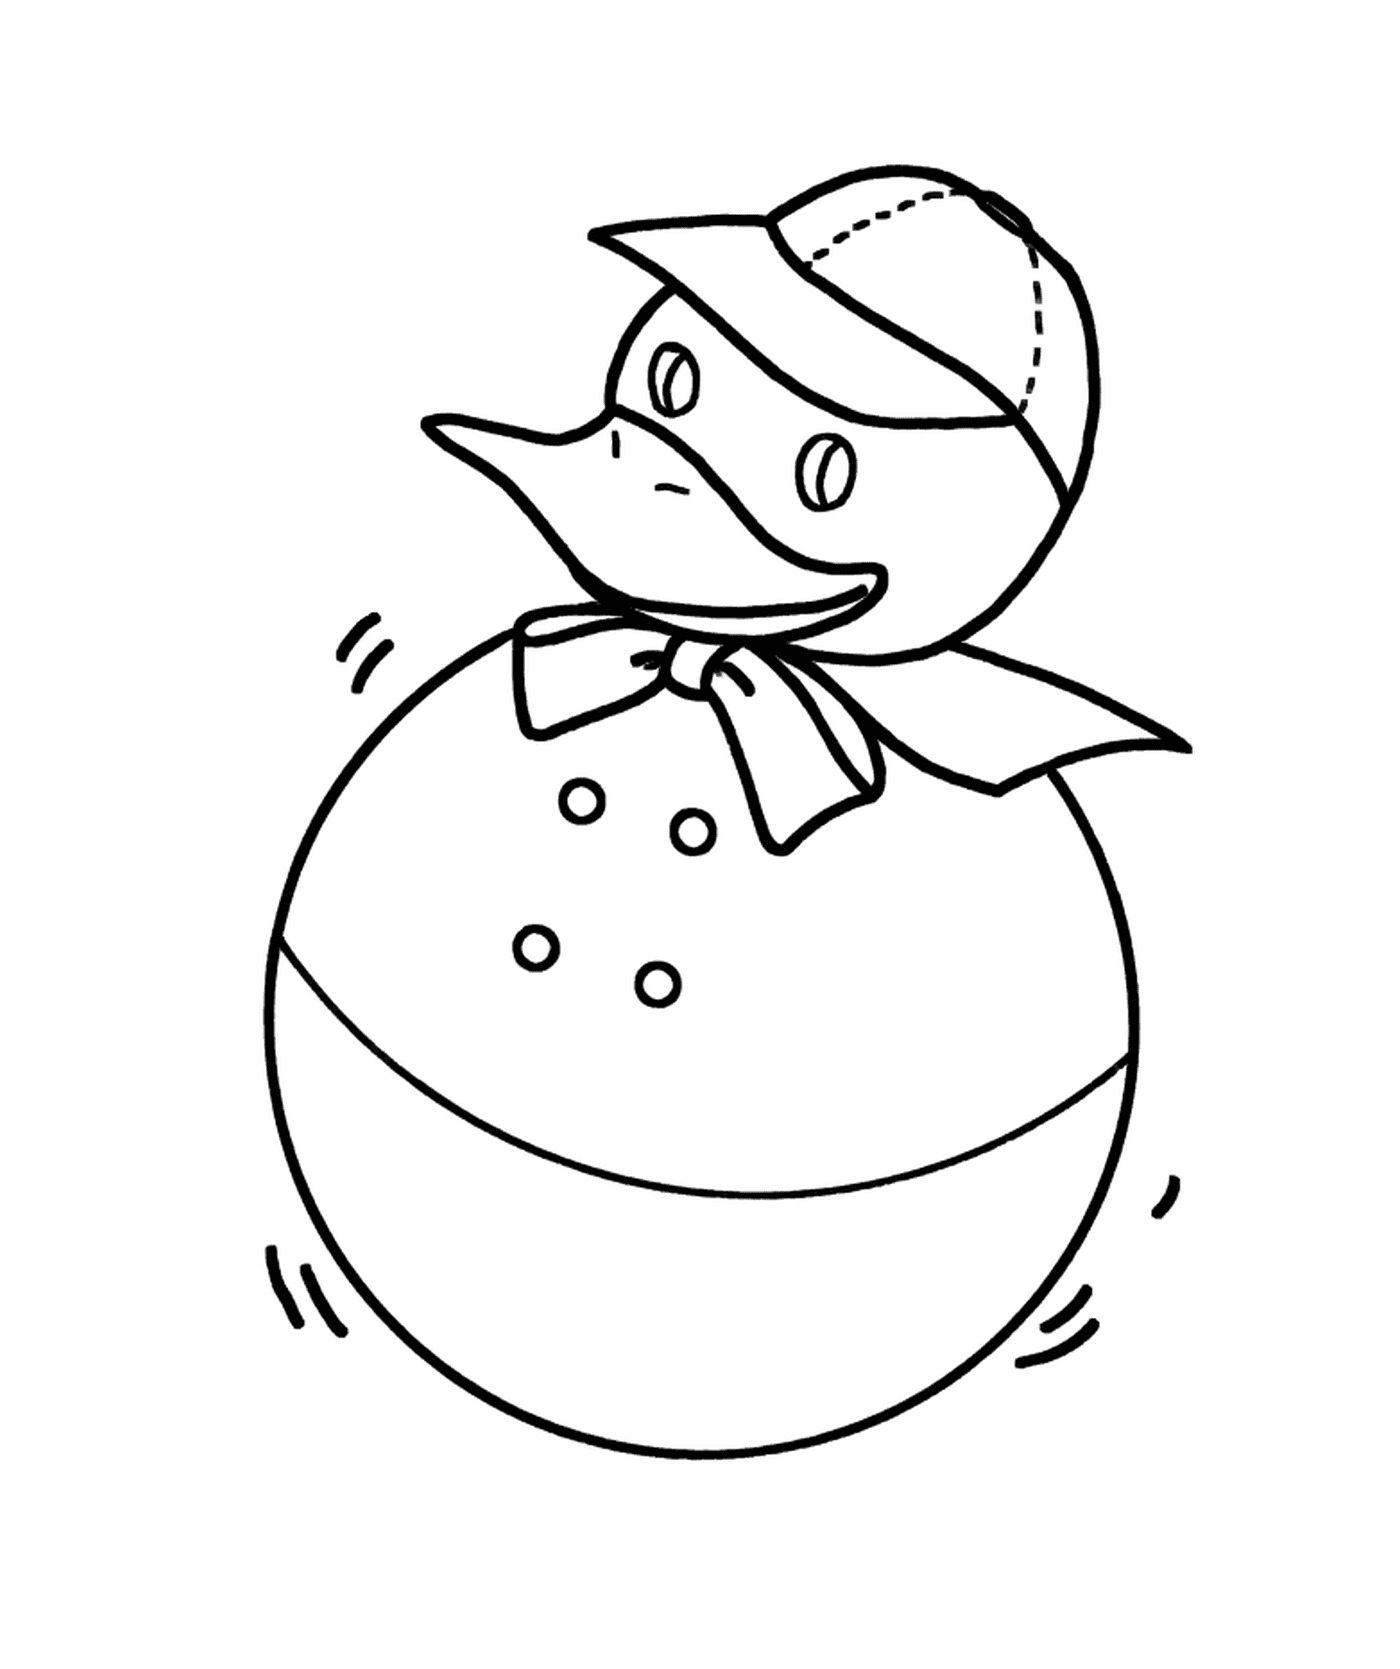  Um pato de borracha vestindo um chapéu 